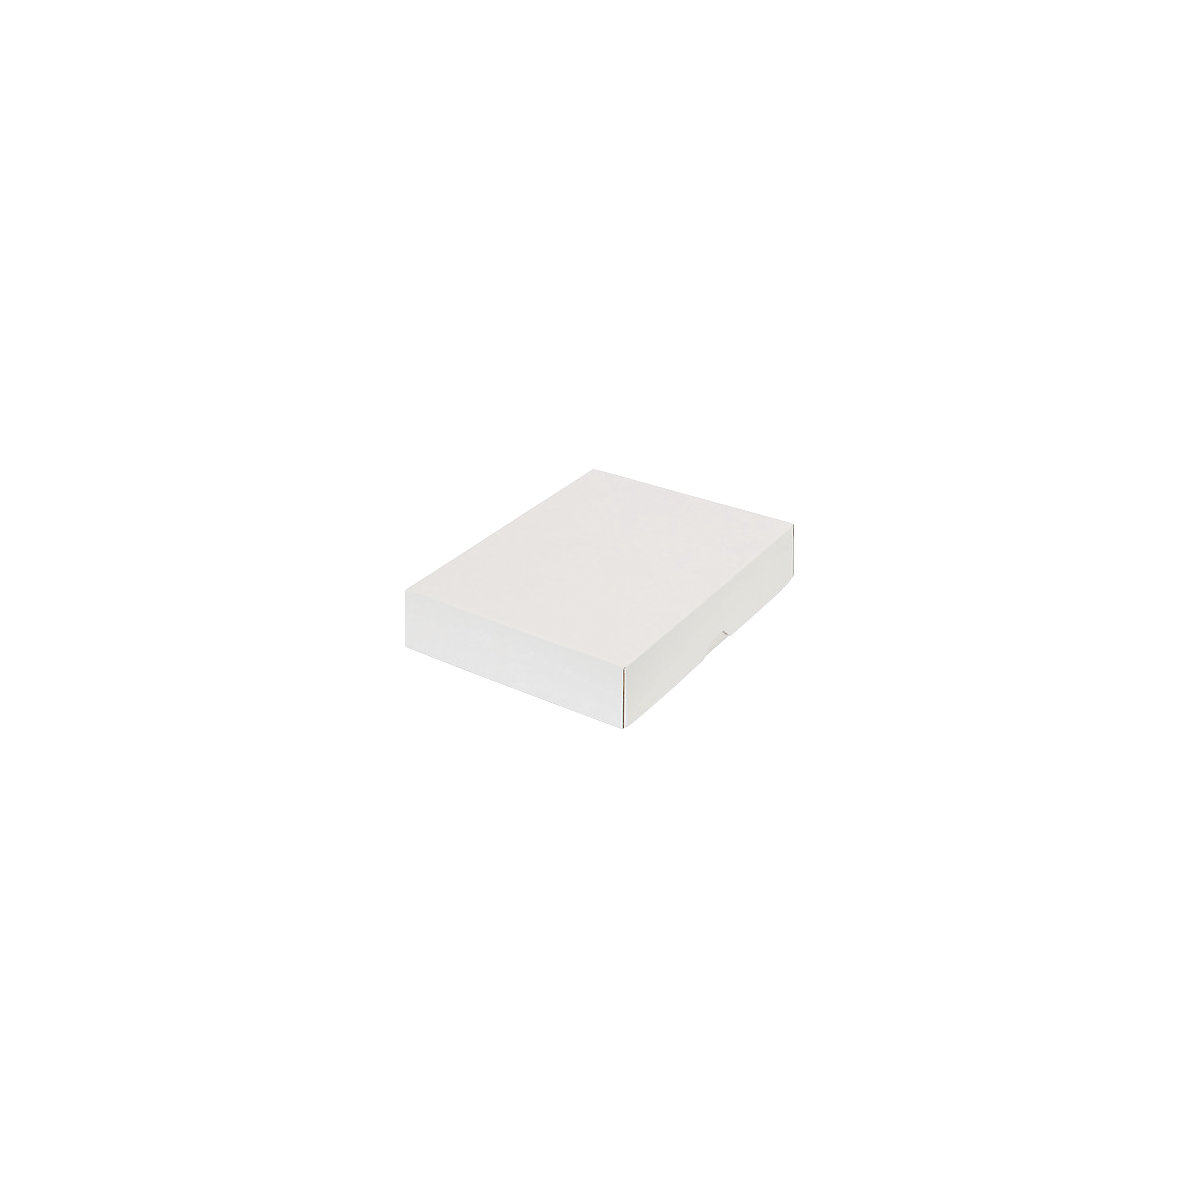 Stülpdeckelkarton, zweiteilig, Innenmaße 252 x 180 x 45 mm, B5, weiß, ab 150 Stk-43